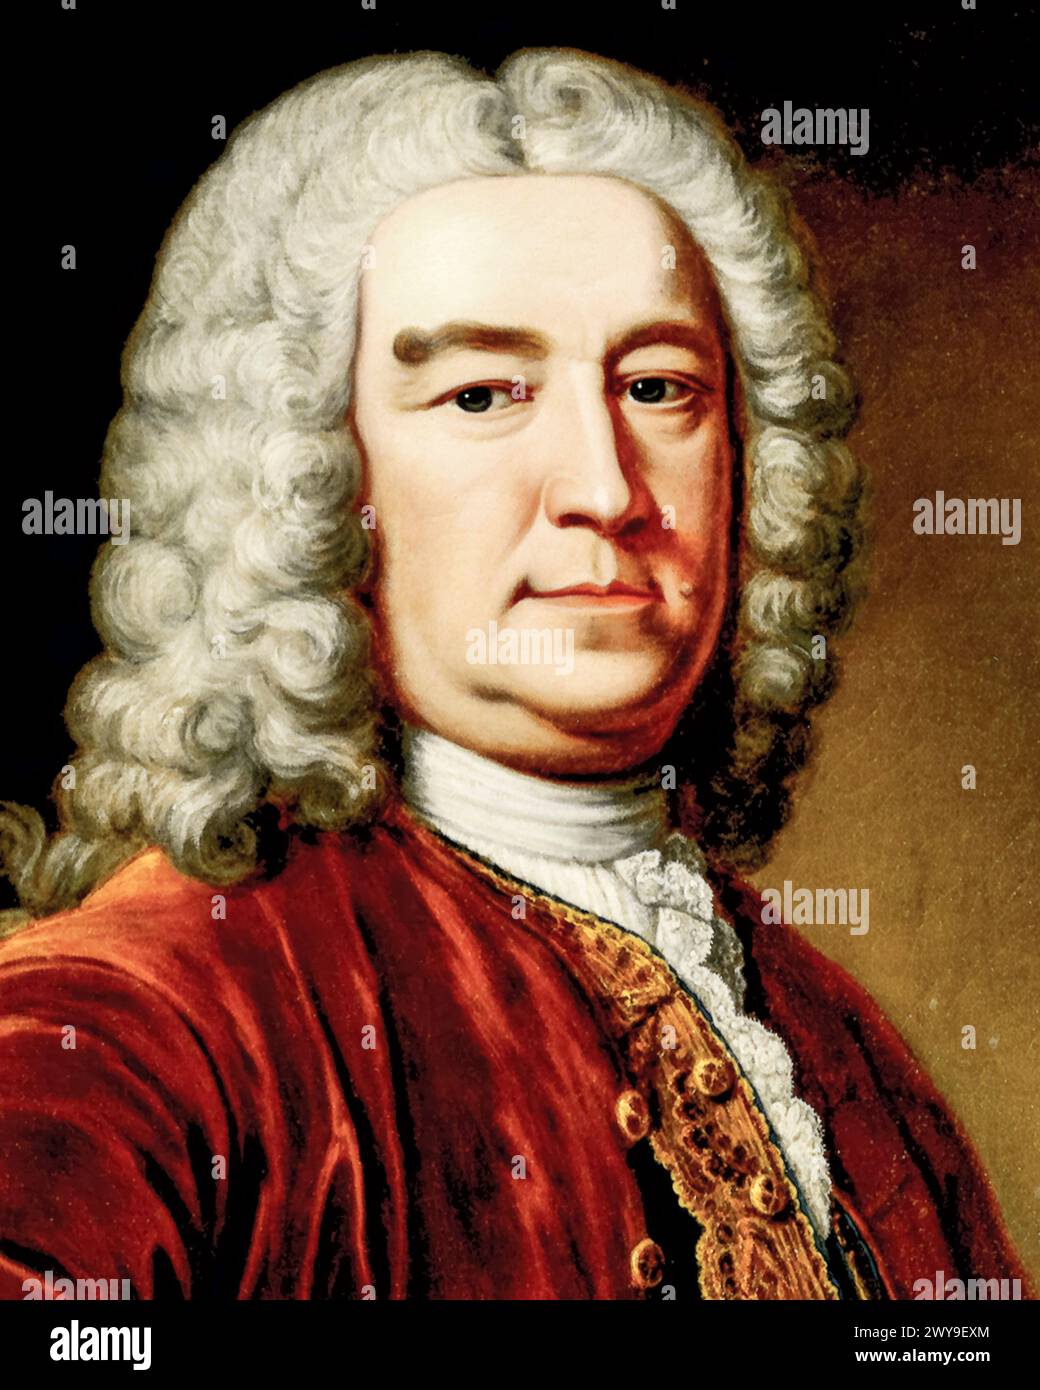 Henry Pelham (1694-1754), homme politique whig et premier ministre de Grande-Bretagne 1743-1754, portrait peint à l'huile sur toile par John Giles Eccardt (attribué), avant 1779 Banque D'Images